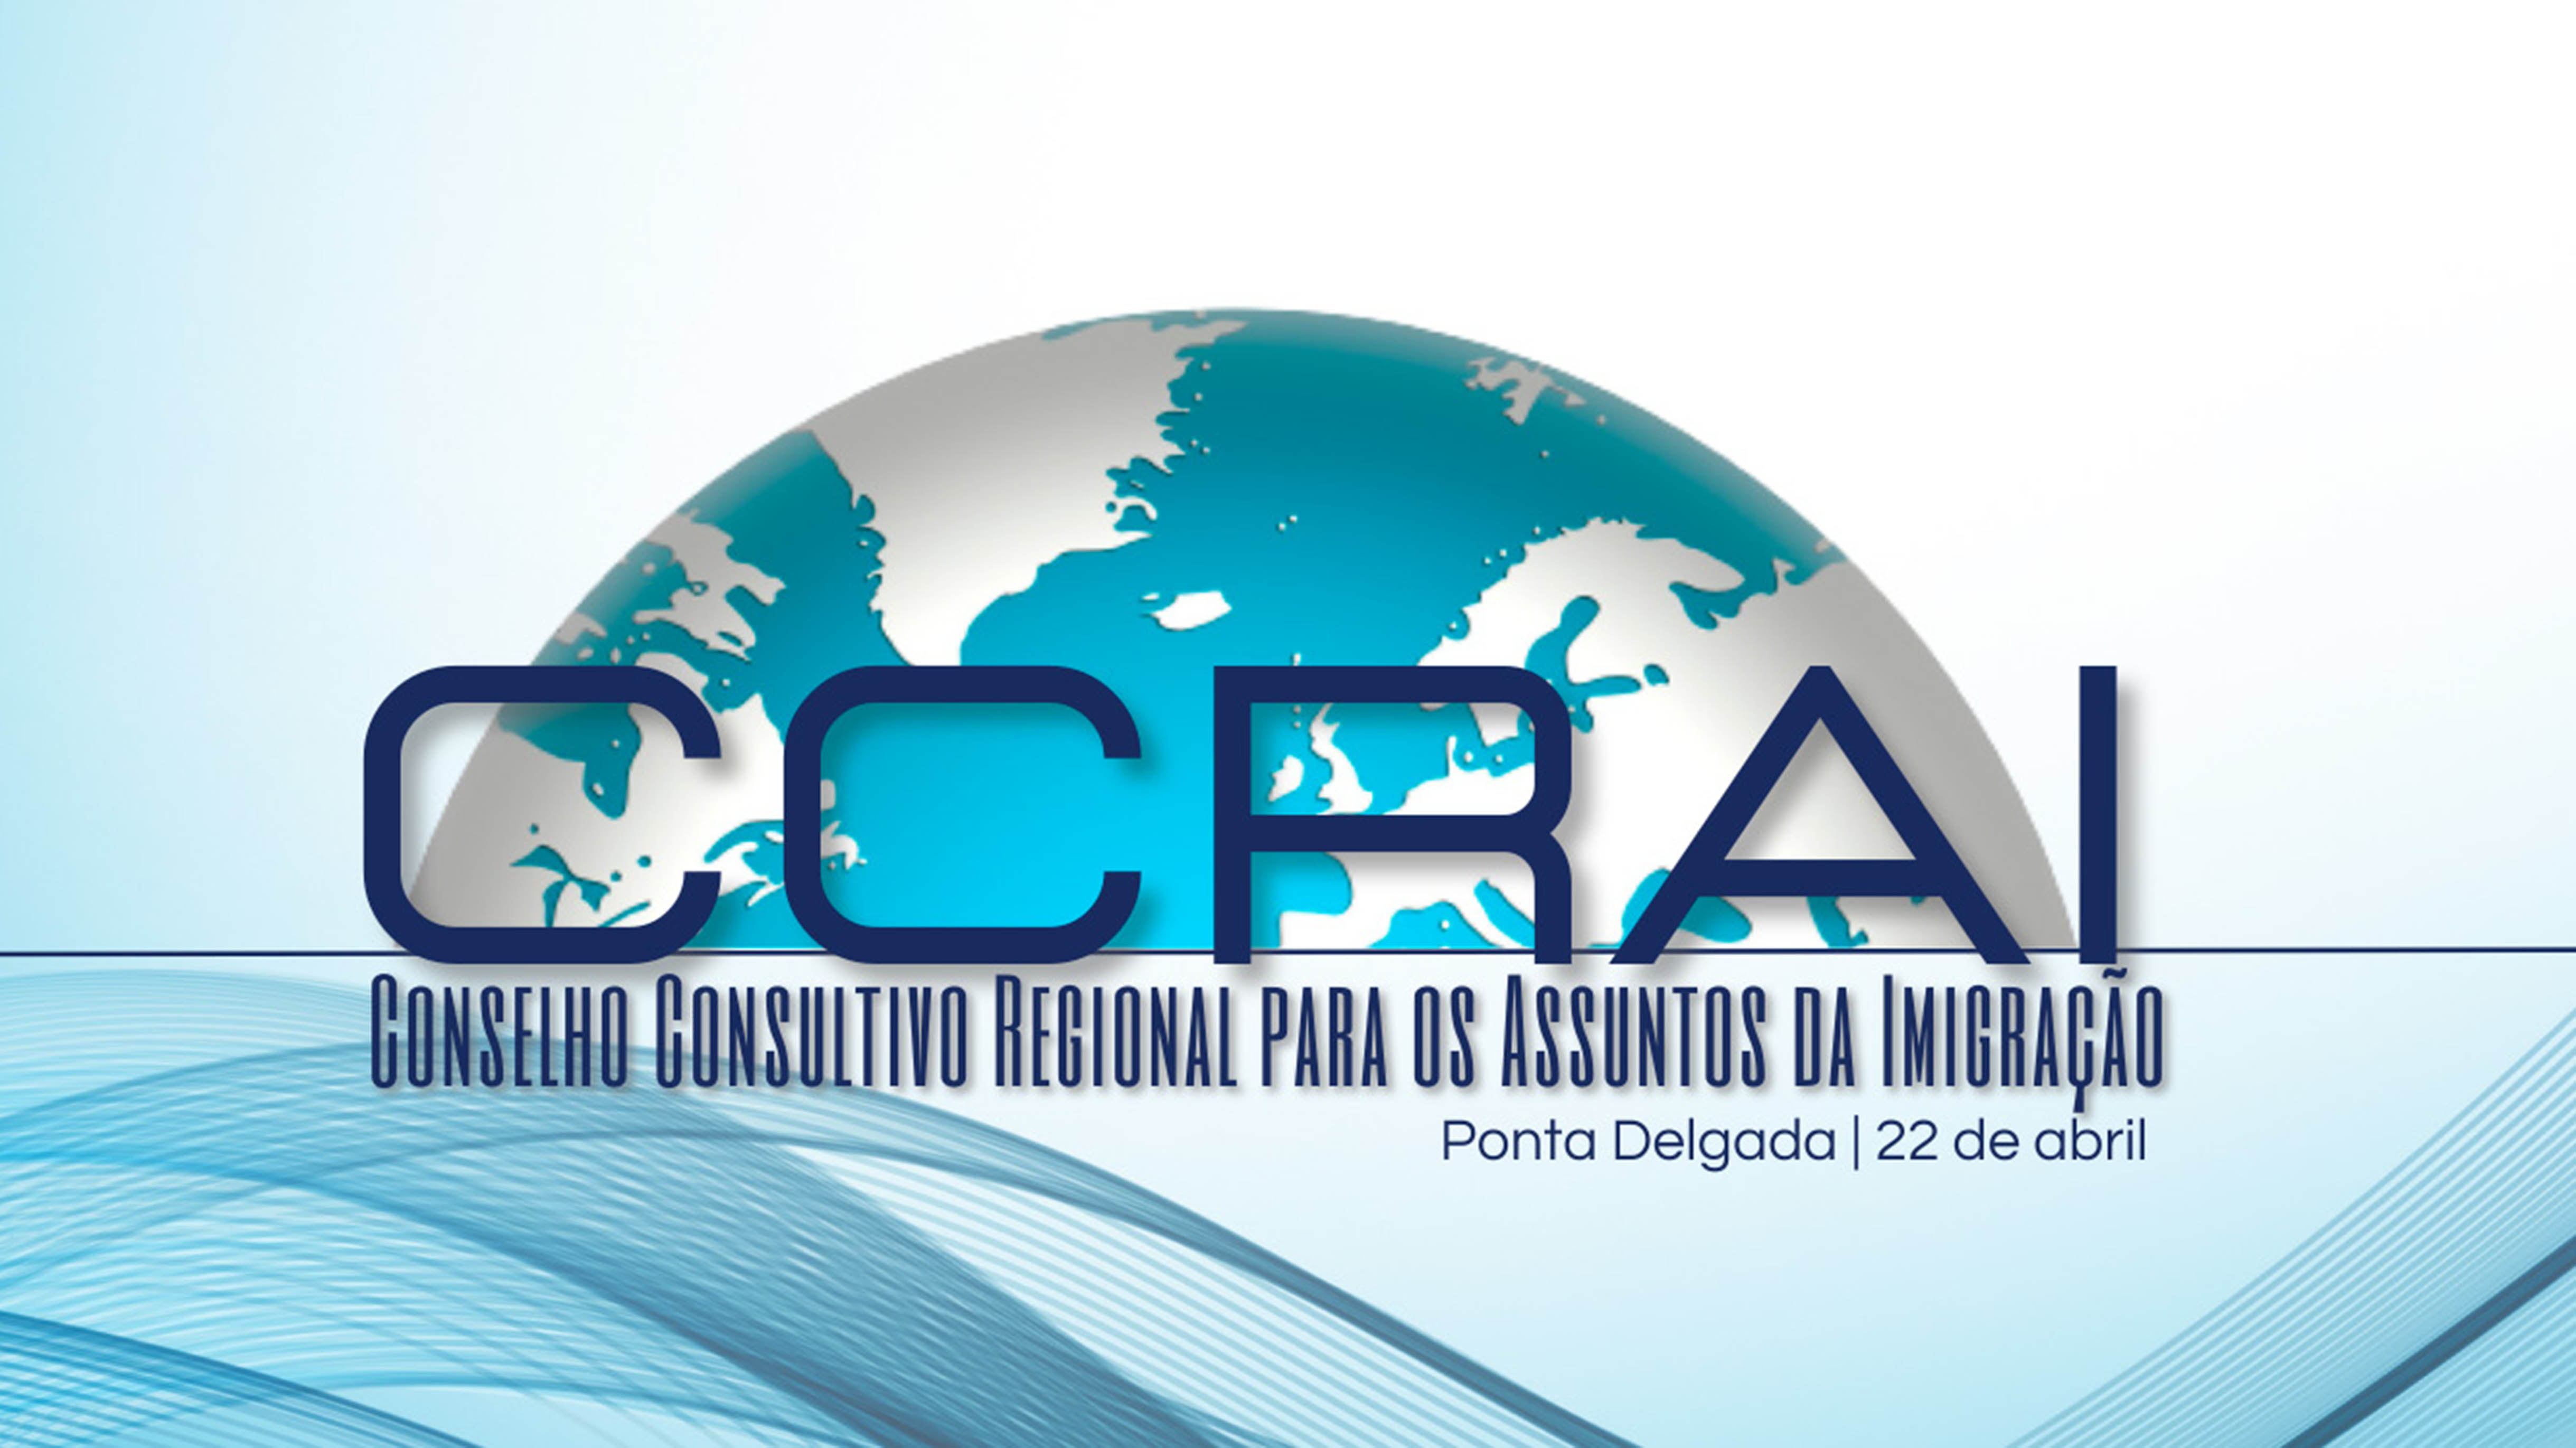 Conselho Consultivo Regional para os Assuntos da Imigração (CCRAI) - cartaz